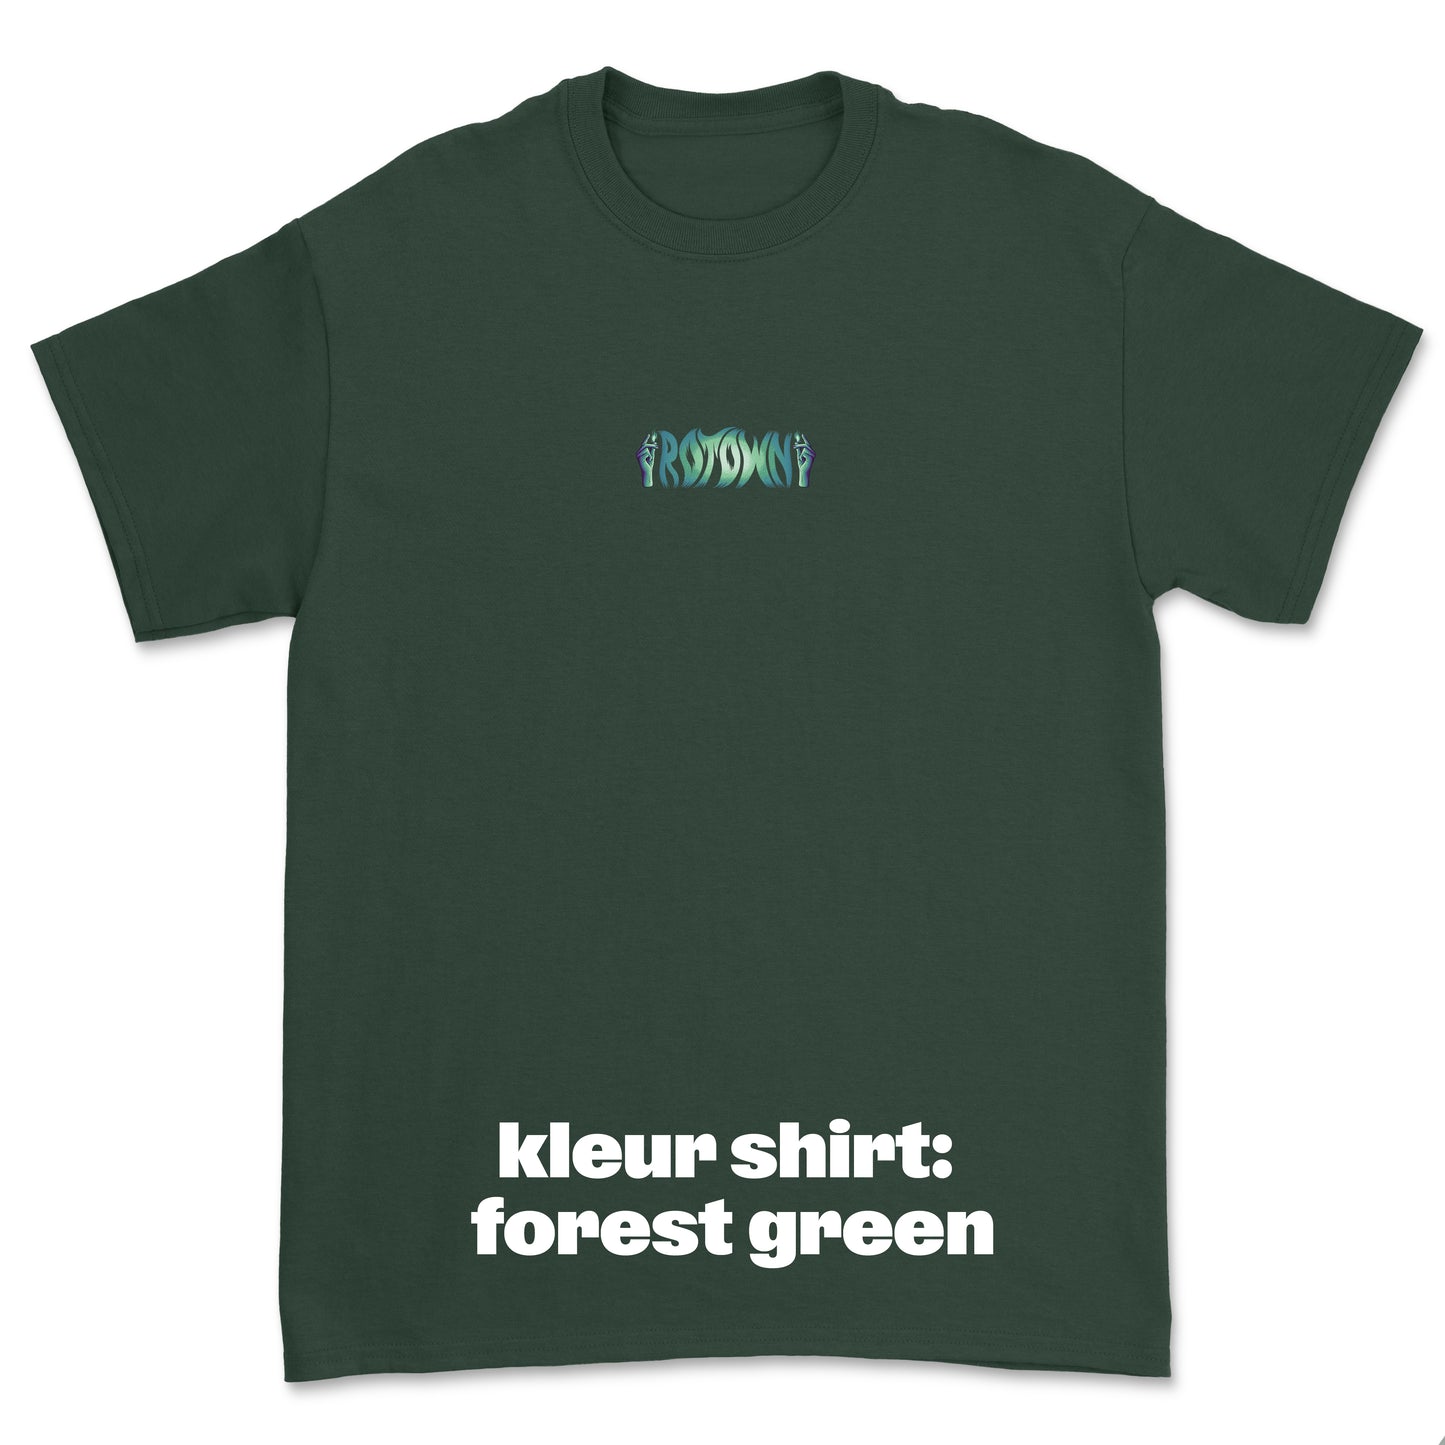 T-shirt 'Rotown Vuur' • klein groen logo midden